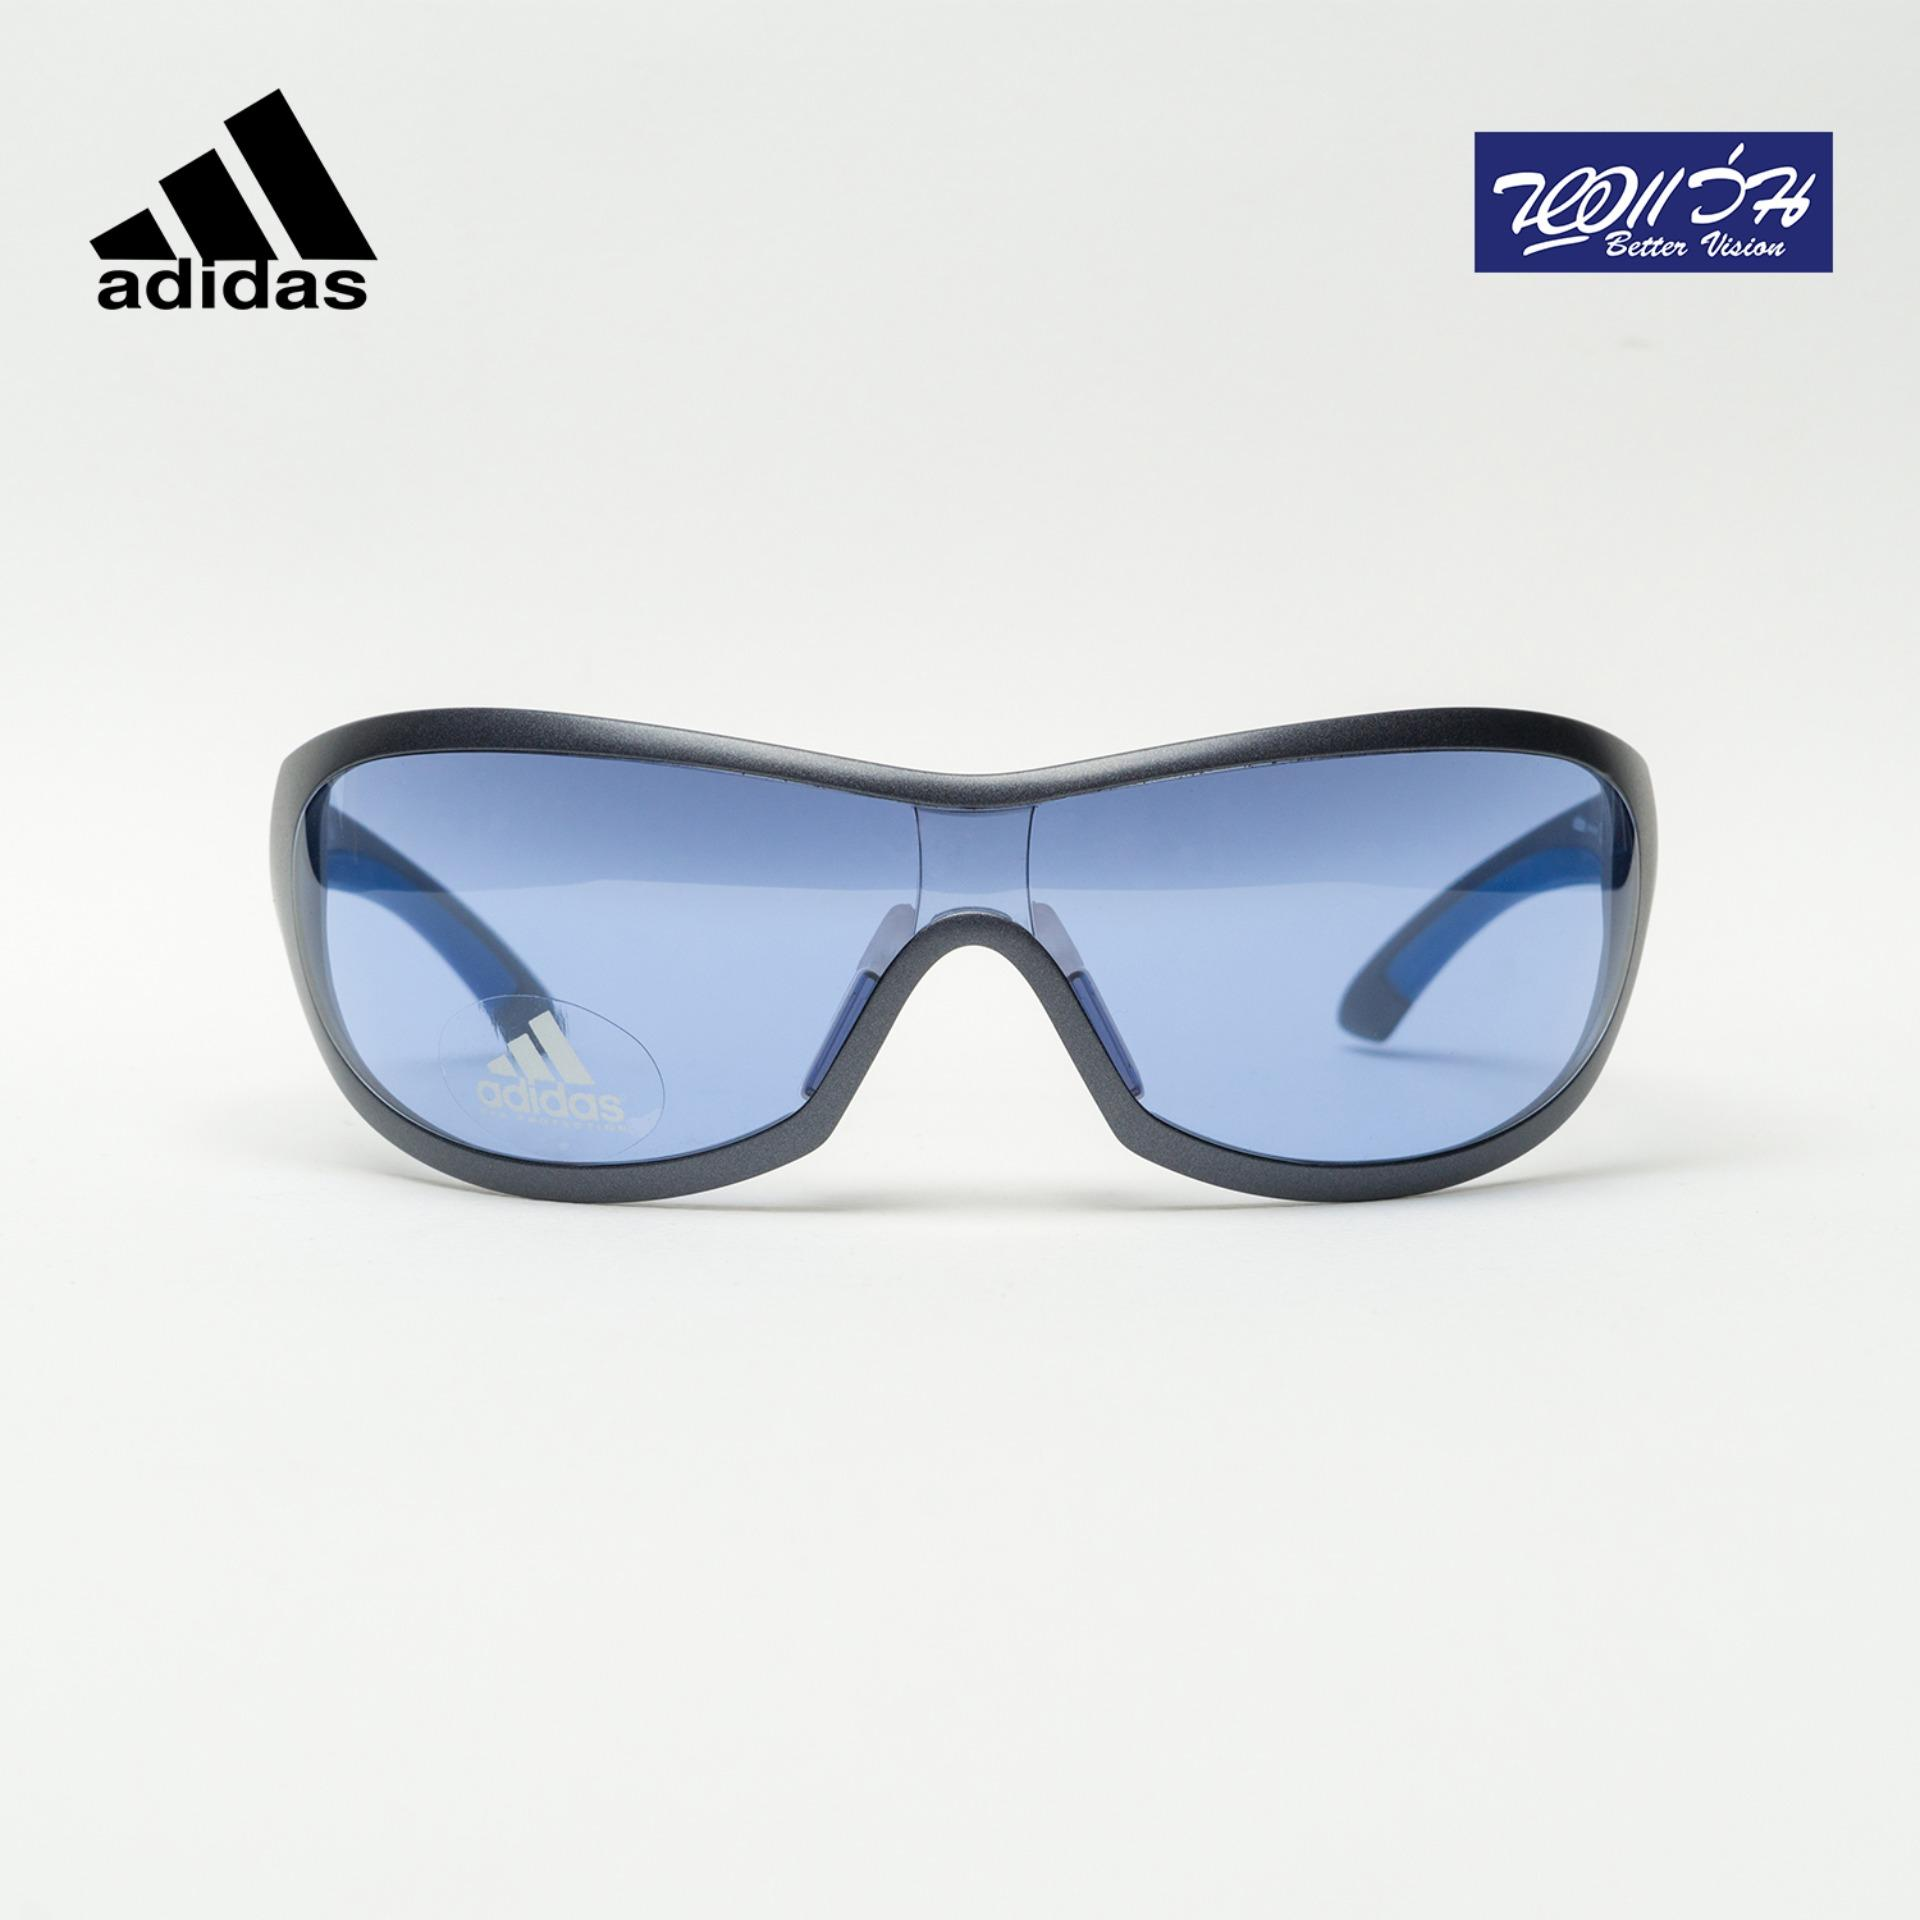 แว่นกันแดด อาดิดาส ADIDAS Sunglasses แถมฟรีส่วนลดค่าตัดเลนส์ 25%  free 25% lens discount รุ่น FADA270 สี GREY BLUE